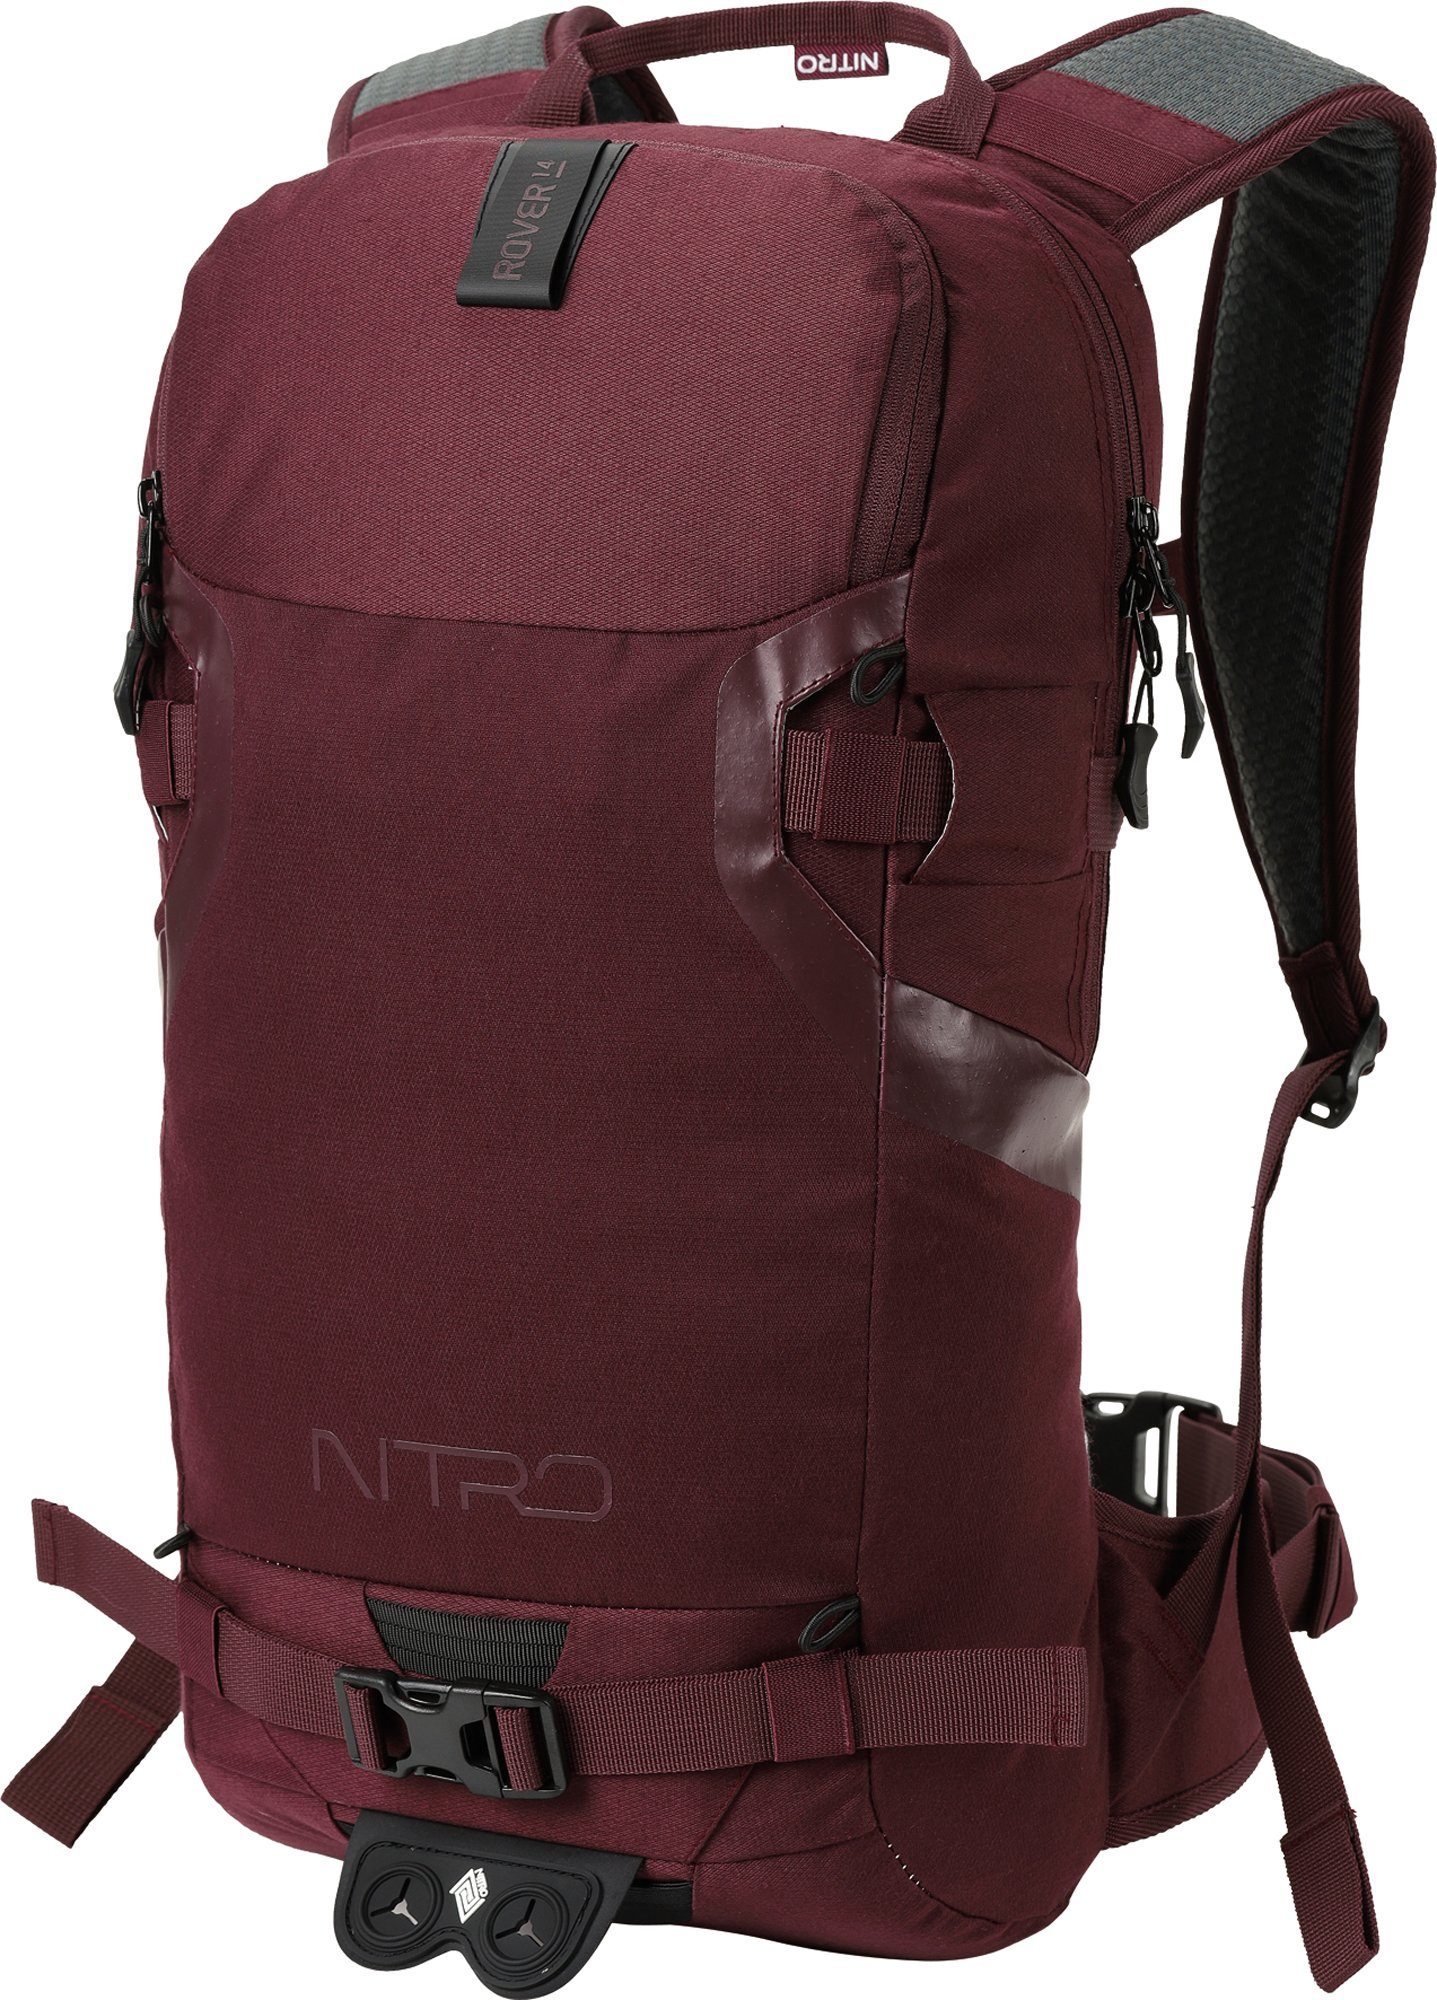 NITRO Trekkingrucksack Rover 14, Wine, speziell für den Wintersport konzipiert | Wanderrucksäcke